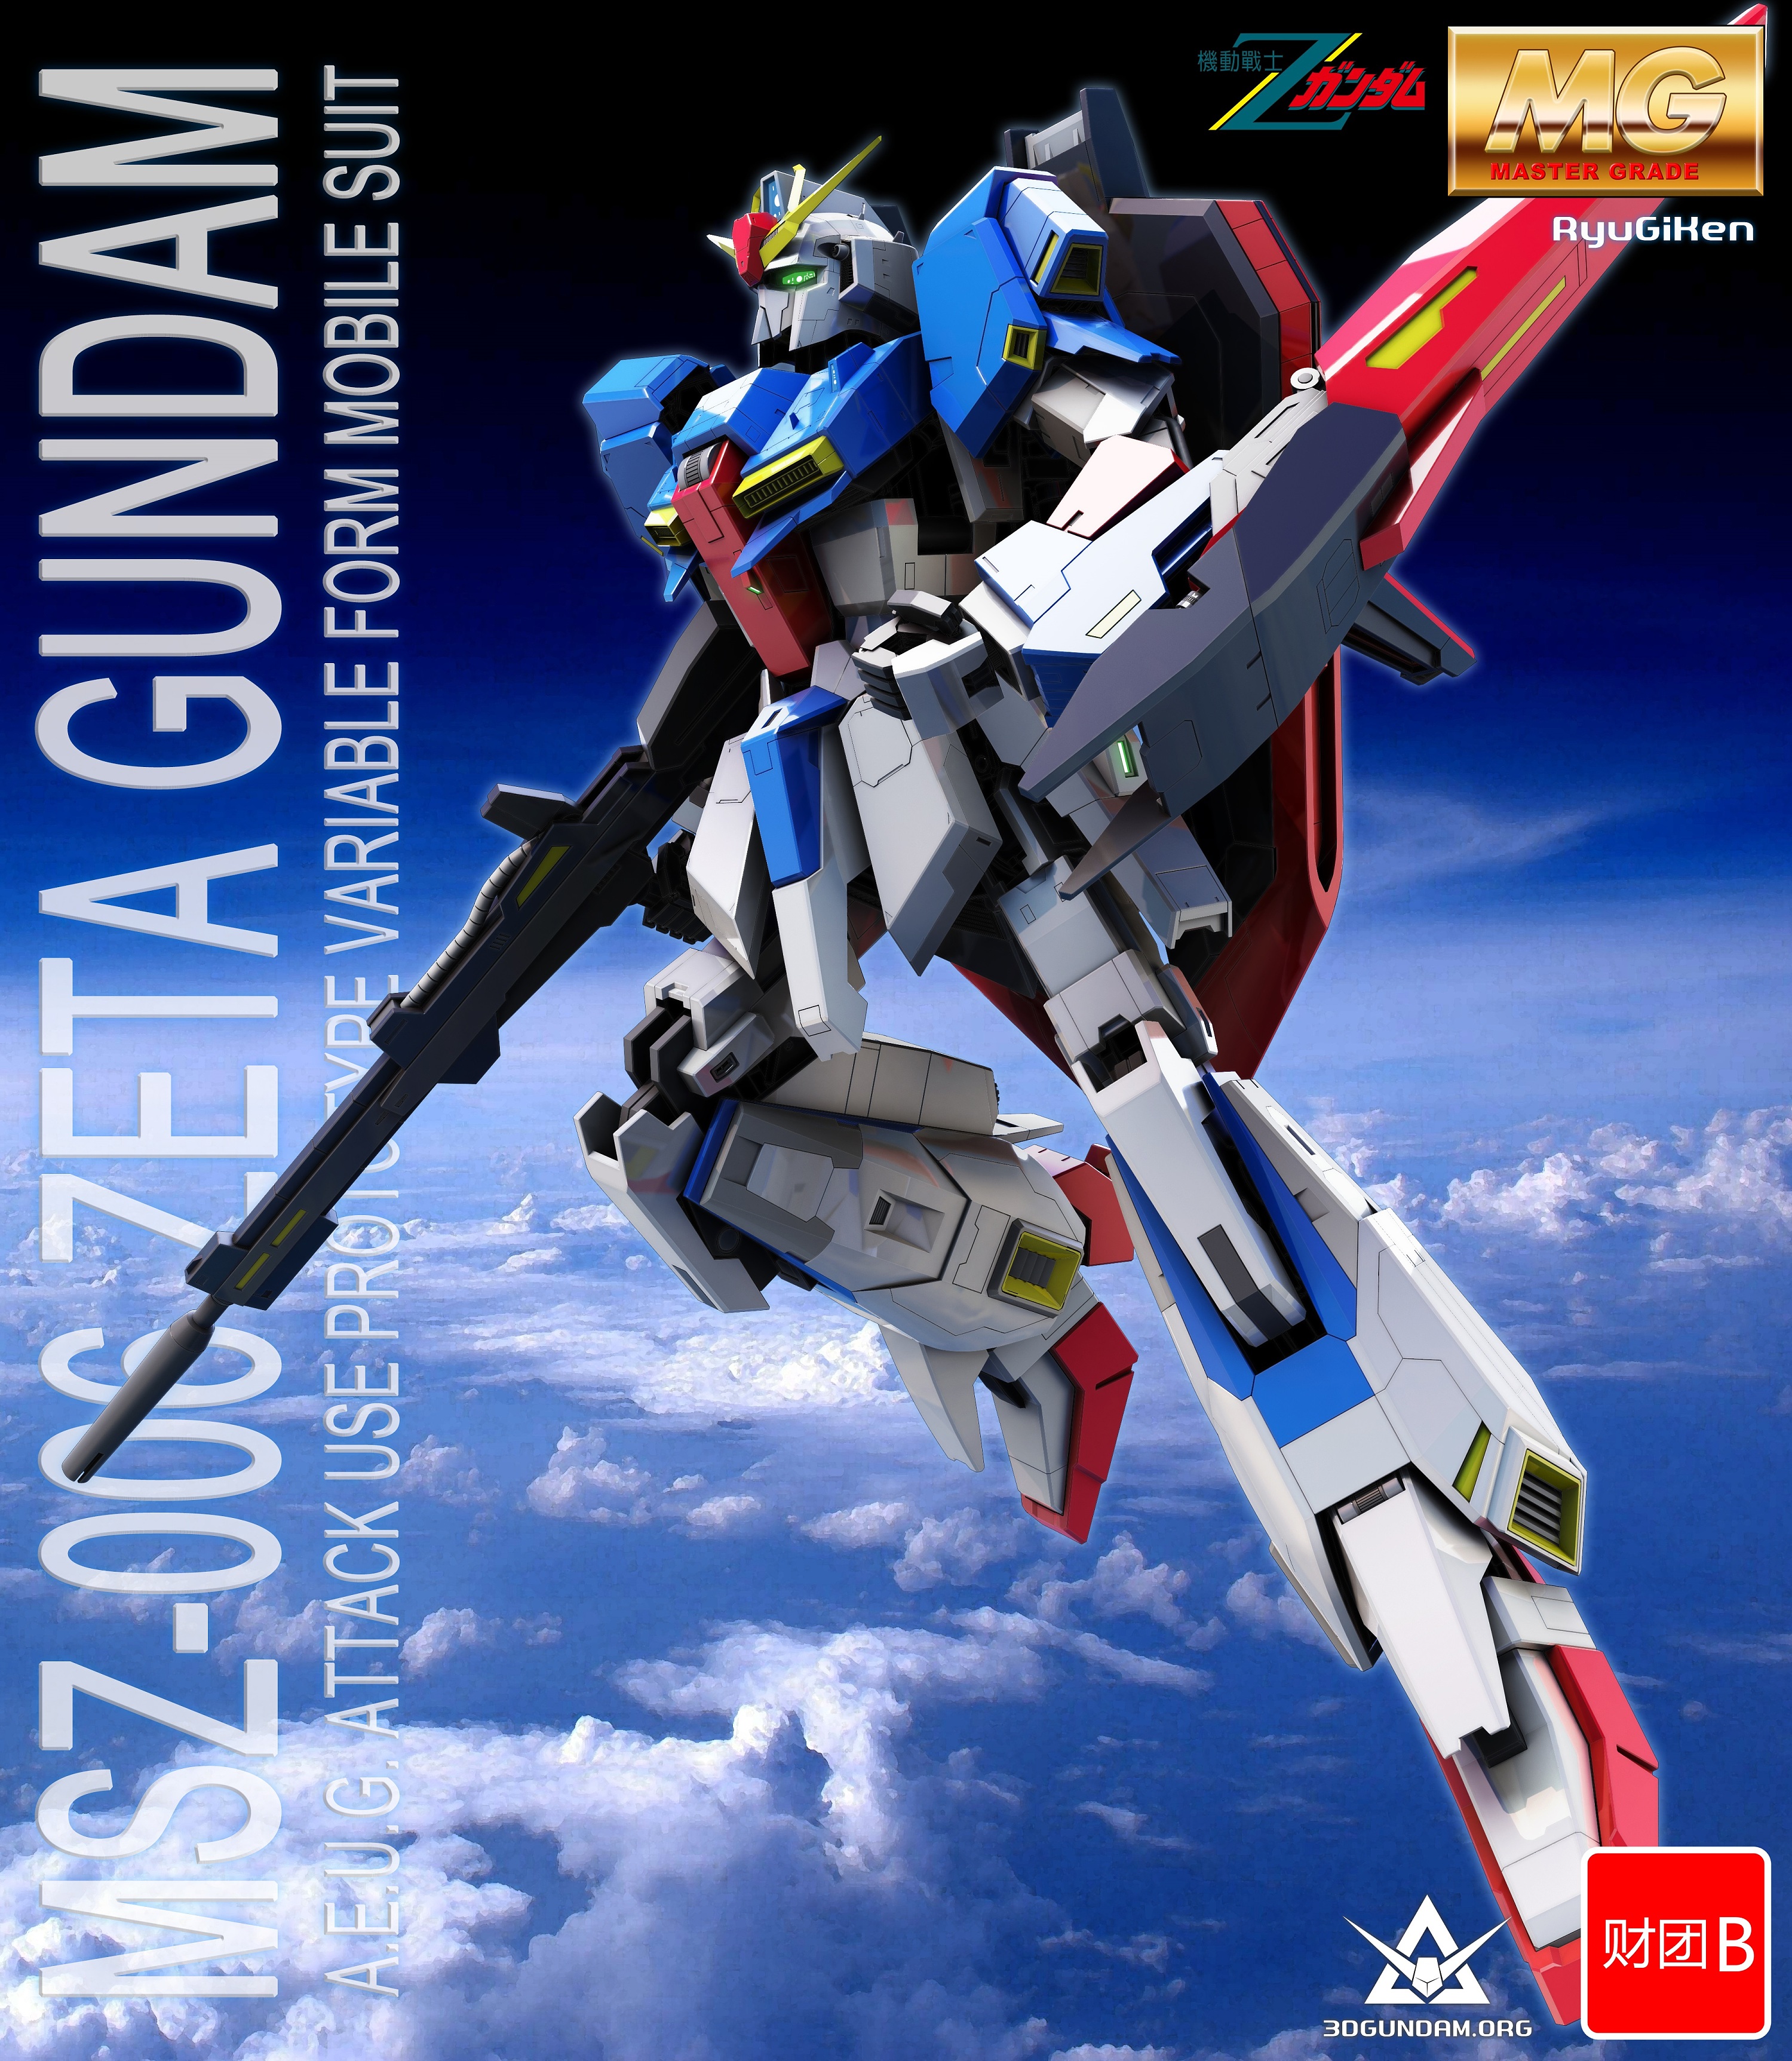 Image - Gundam Versus - Poster C.jpg | The Gundam Wiki | FANDOM powered ...